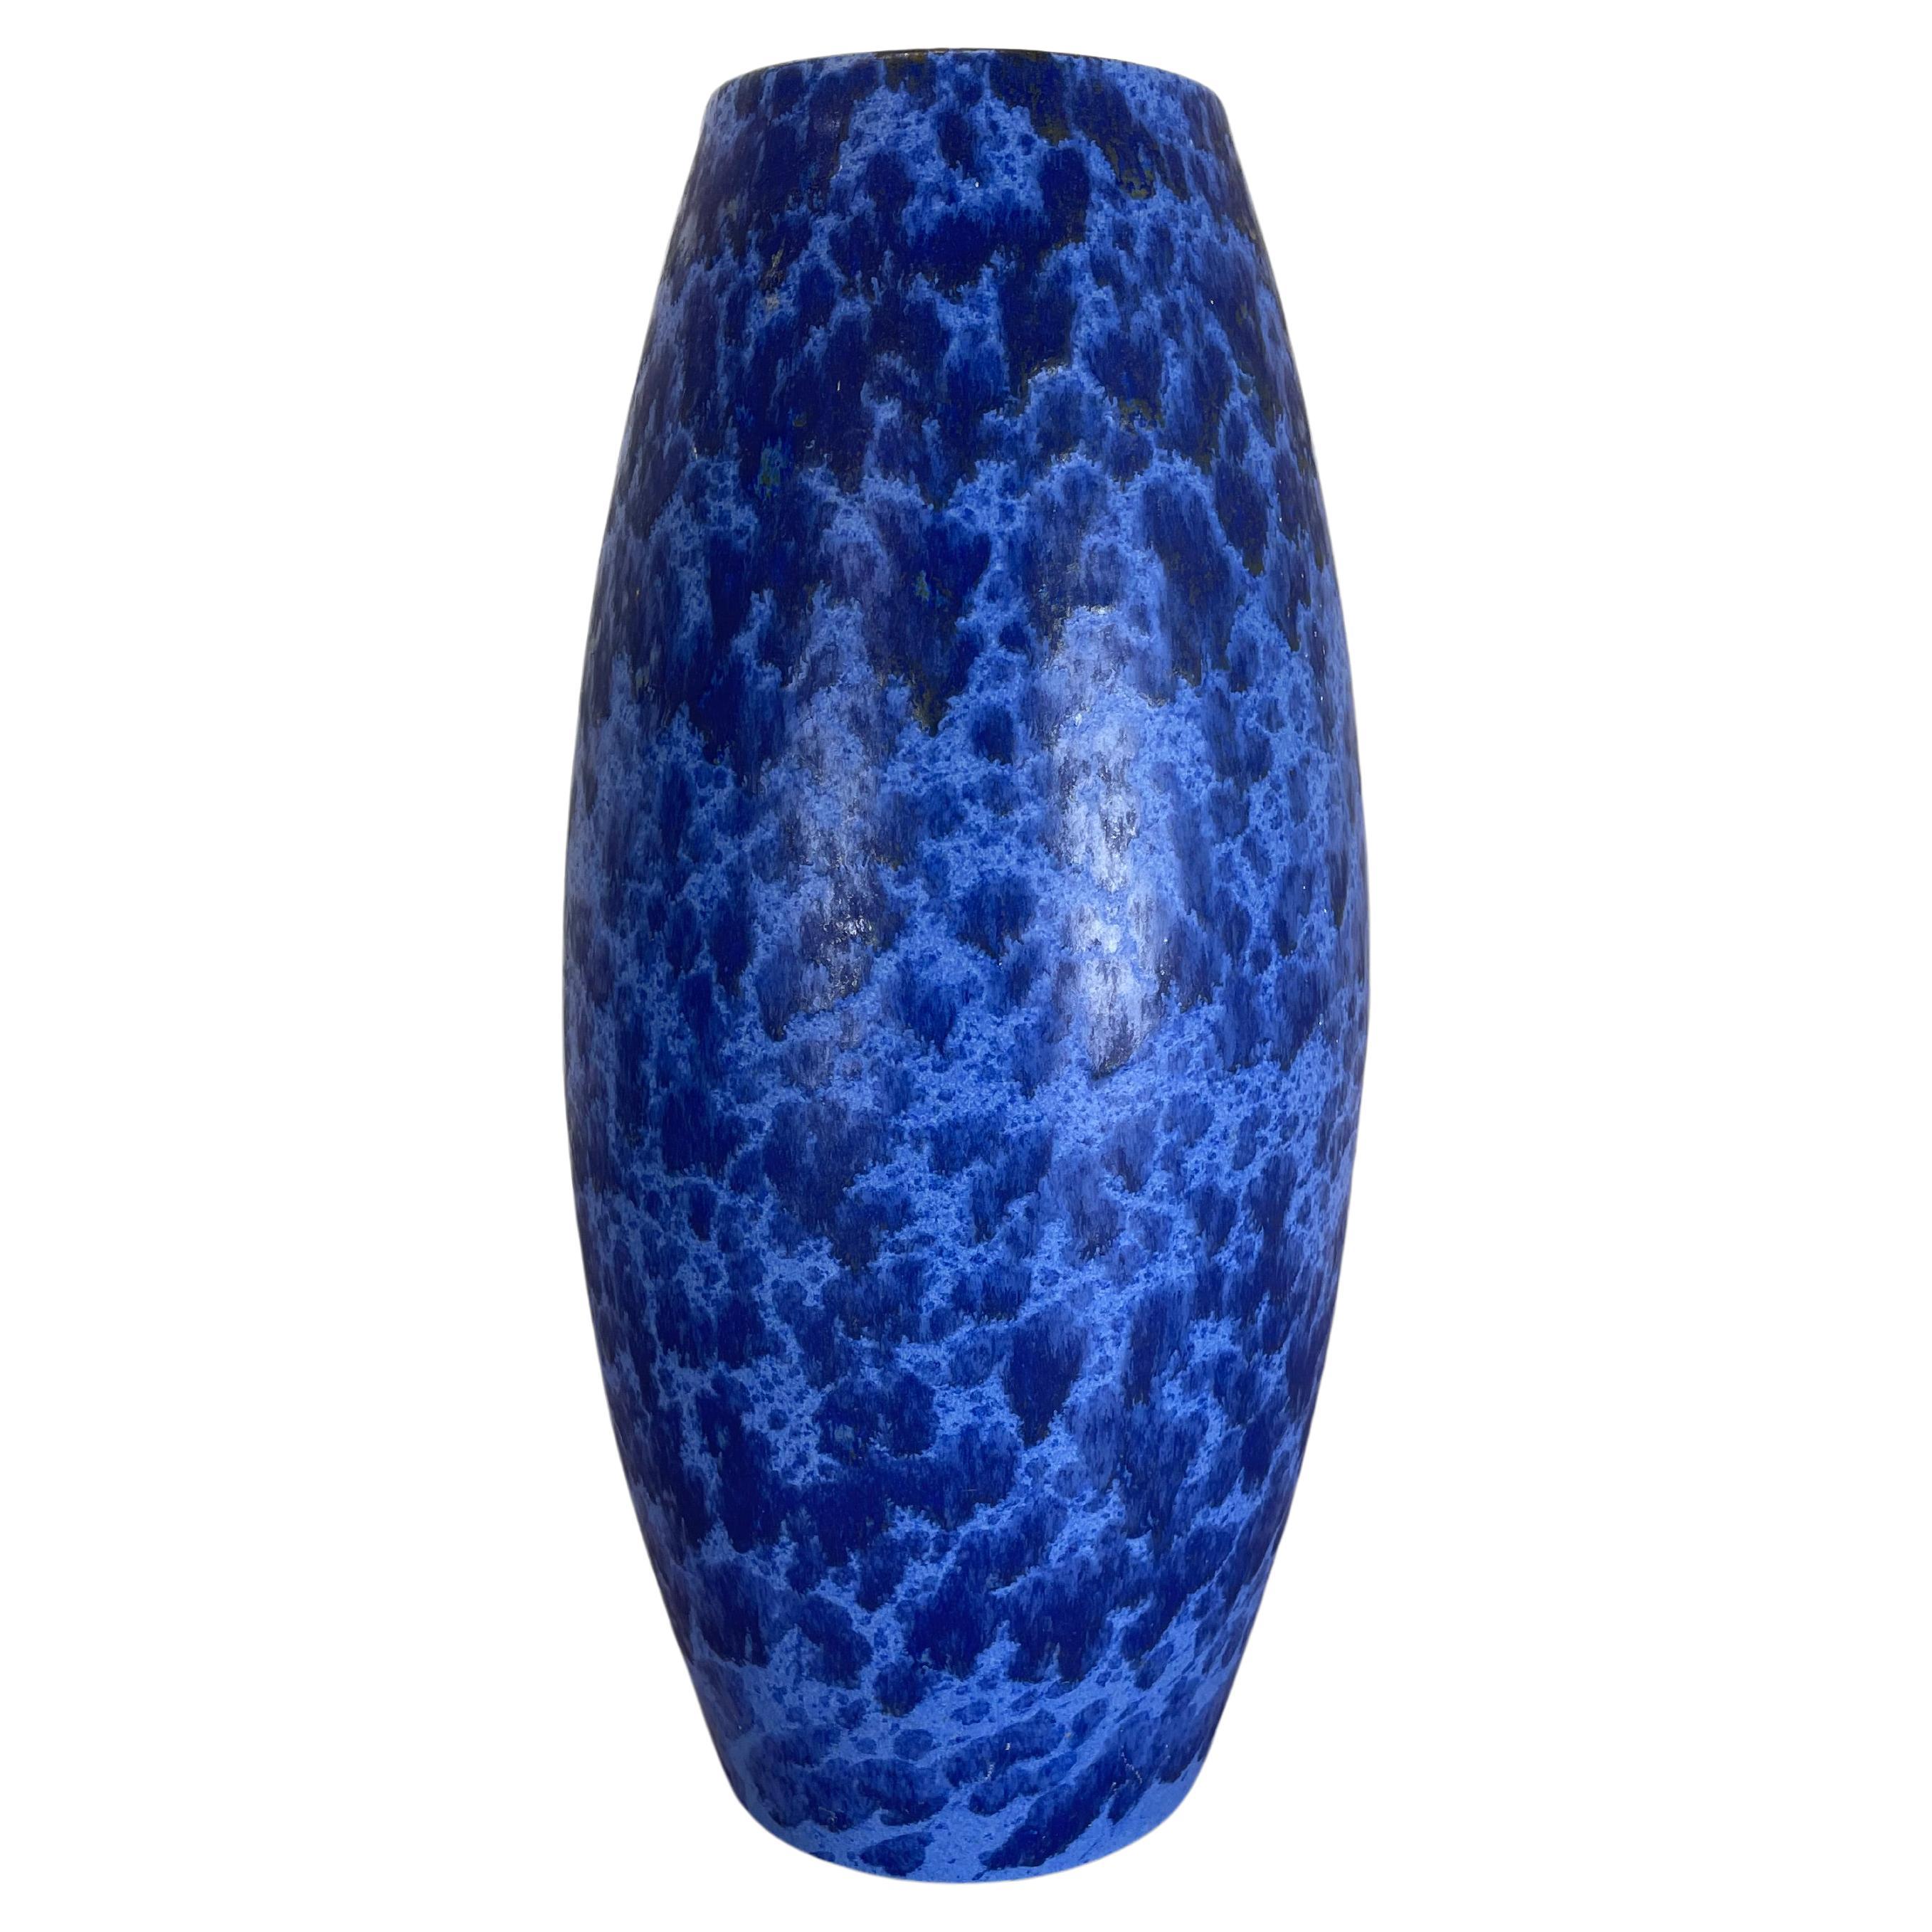 Grand vase de sol bleu-bleu en poterie grasse de 38 cm fabriqué par Scheurich, 1970